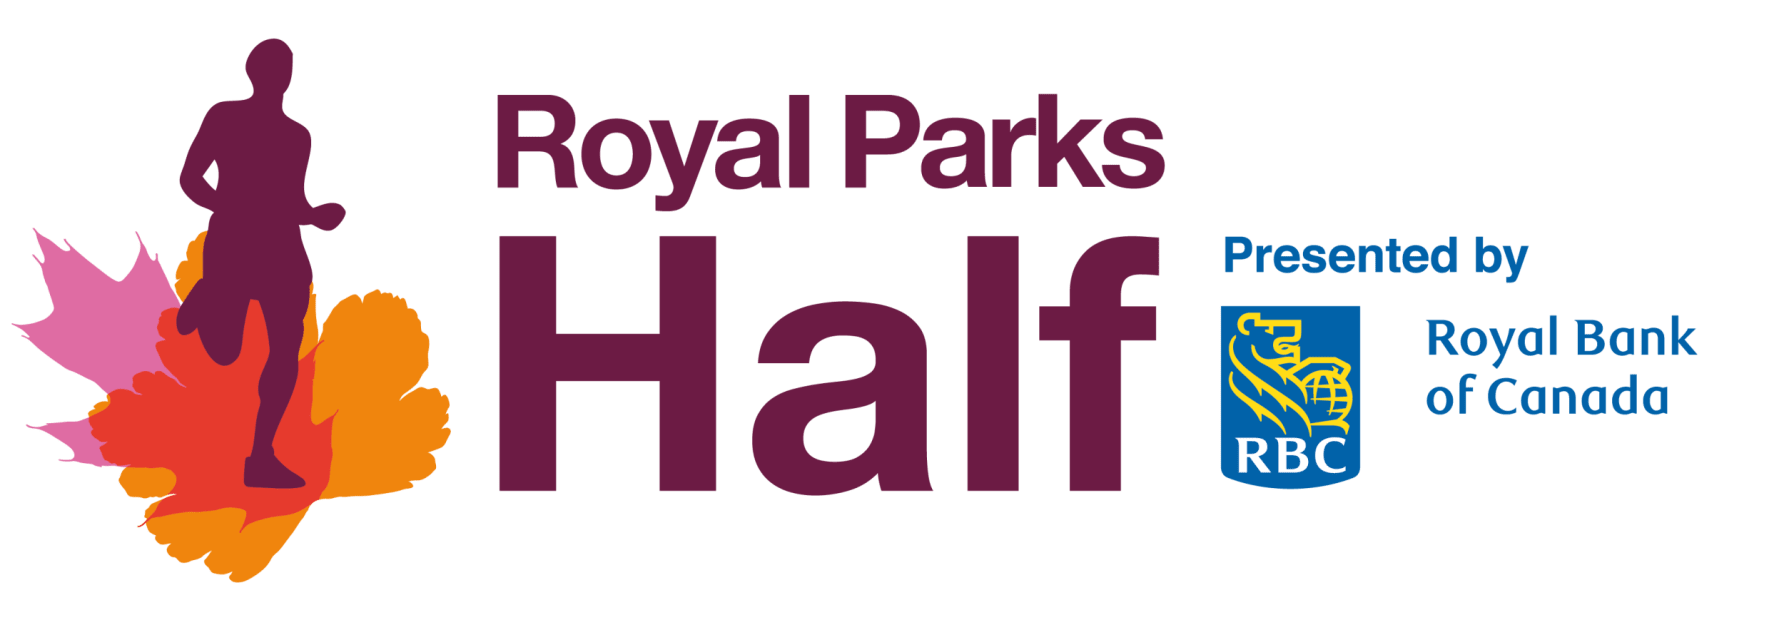 Royal parks half marathon logo